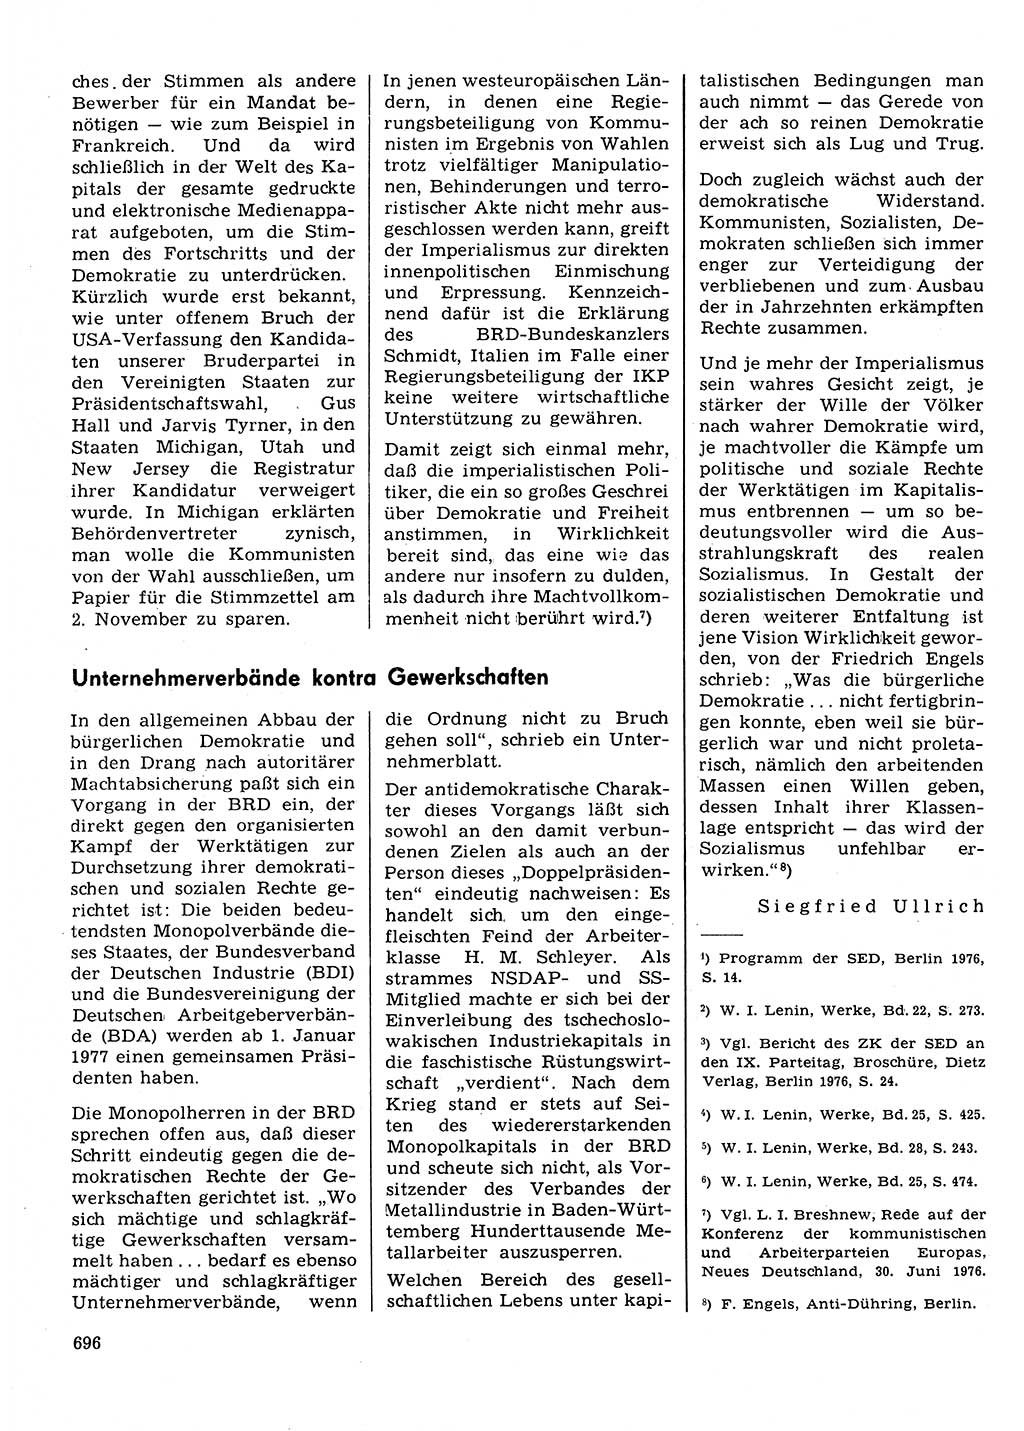 Neuer Weg (NW), Organ des Zentralkomitees (ZK) der SED (Sozialistische Einheitspartei Deutschlands) für Fragen des Parteilebens, 31. Jahrgang [Deutsche Demokratische Republik (DDR)] 1976, Seite 696 (NW ZK SED DDR 1976, S. 696)